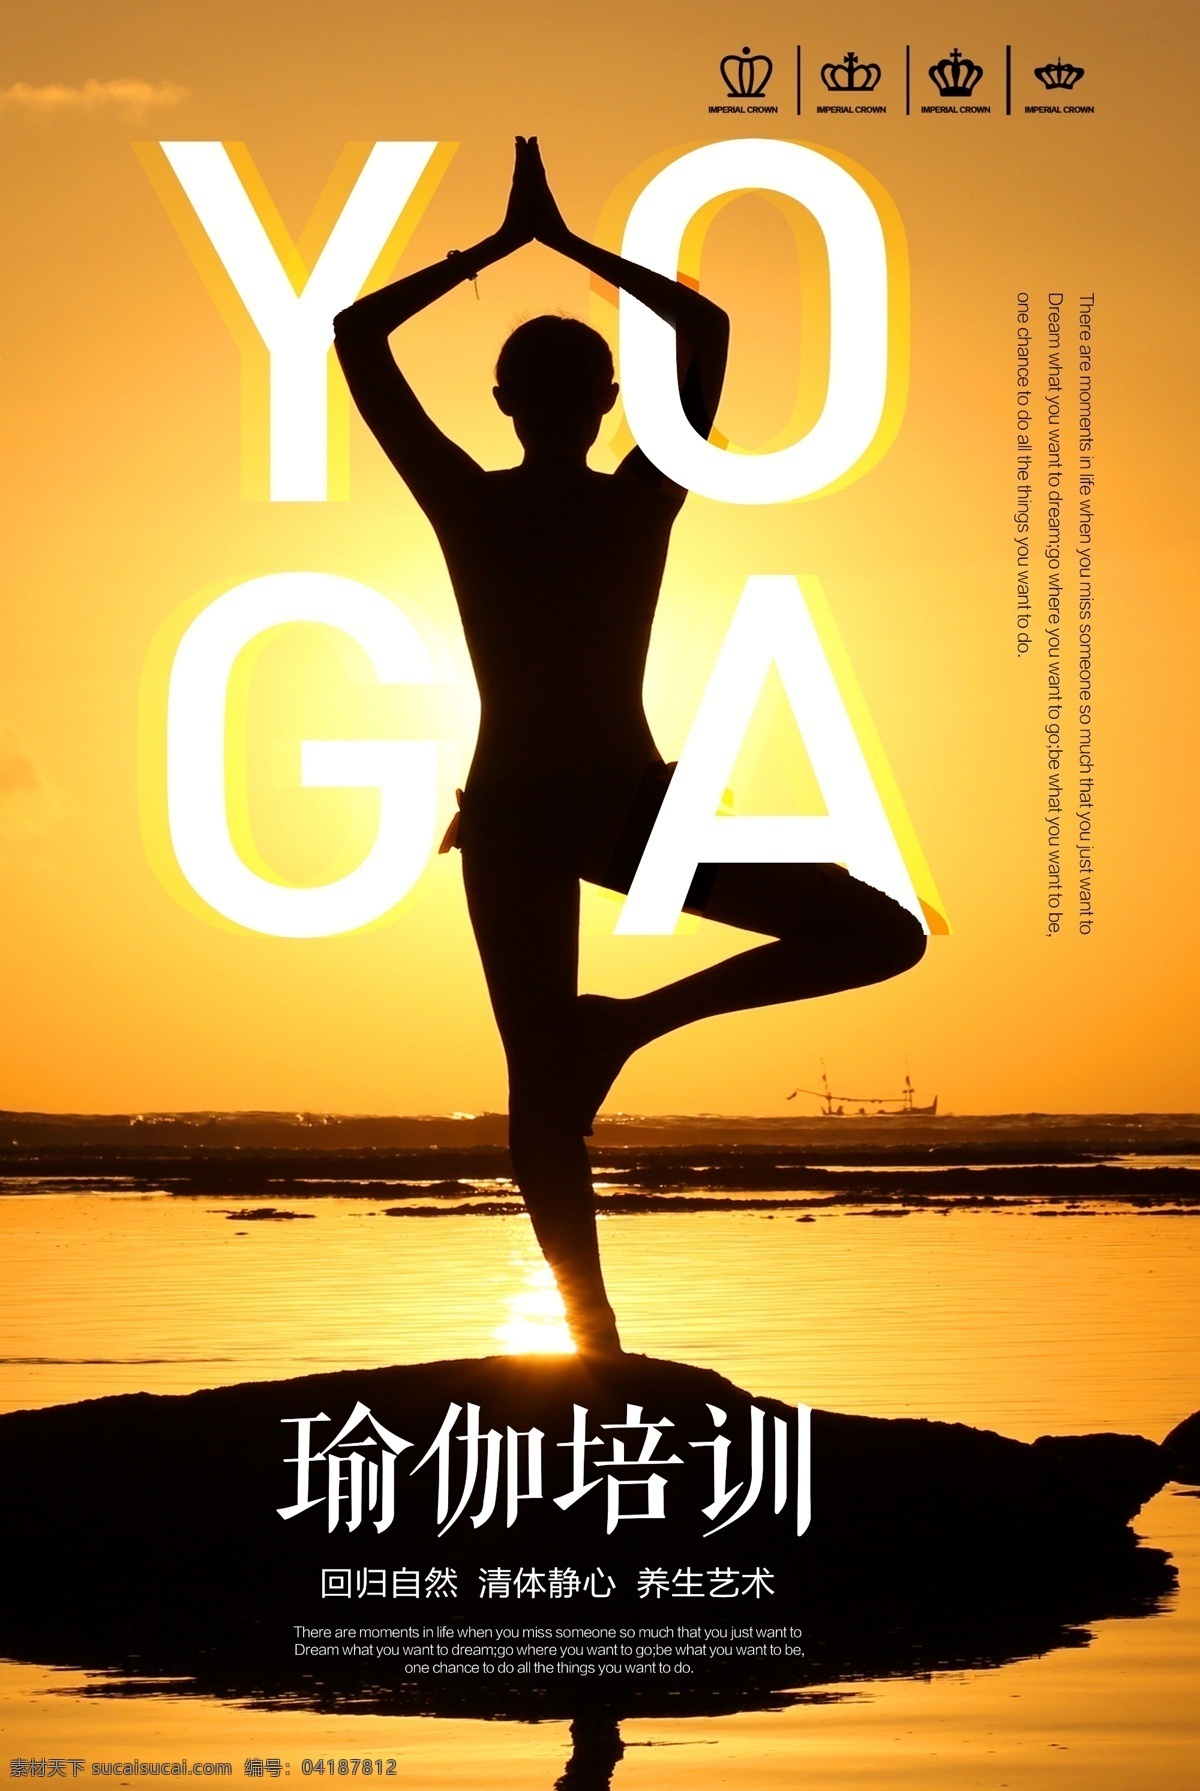 瑜伽 健身 瑜伽海报 瑜伽广告 瑜伽宣传单 瑜伽图片 瑜伽展板 瑜伽宣传 瑜伽挂图 户外瑜伽 室内瑜伽 瑜伽摄影 瑜伽vip 瑜伽中心 瑜伽kt版 健身瑜伽 瑜伽易拉宝 瑜伽房